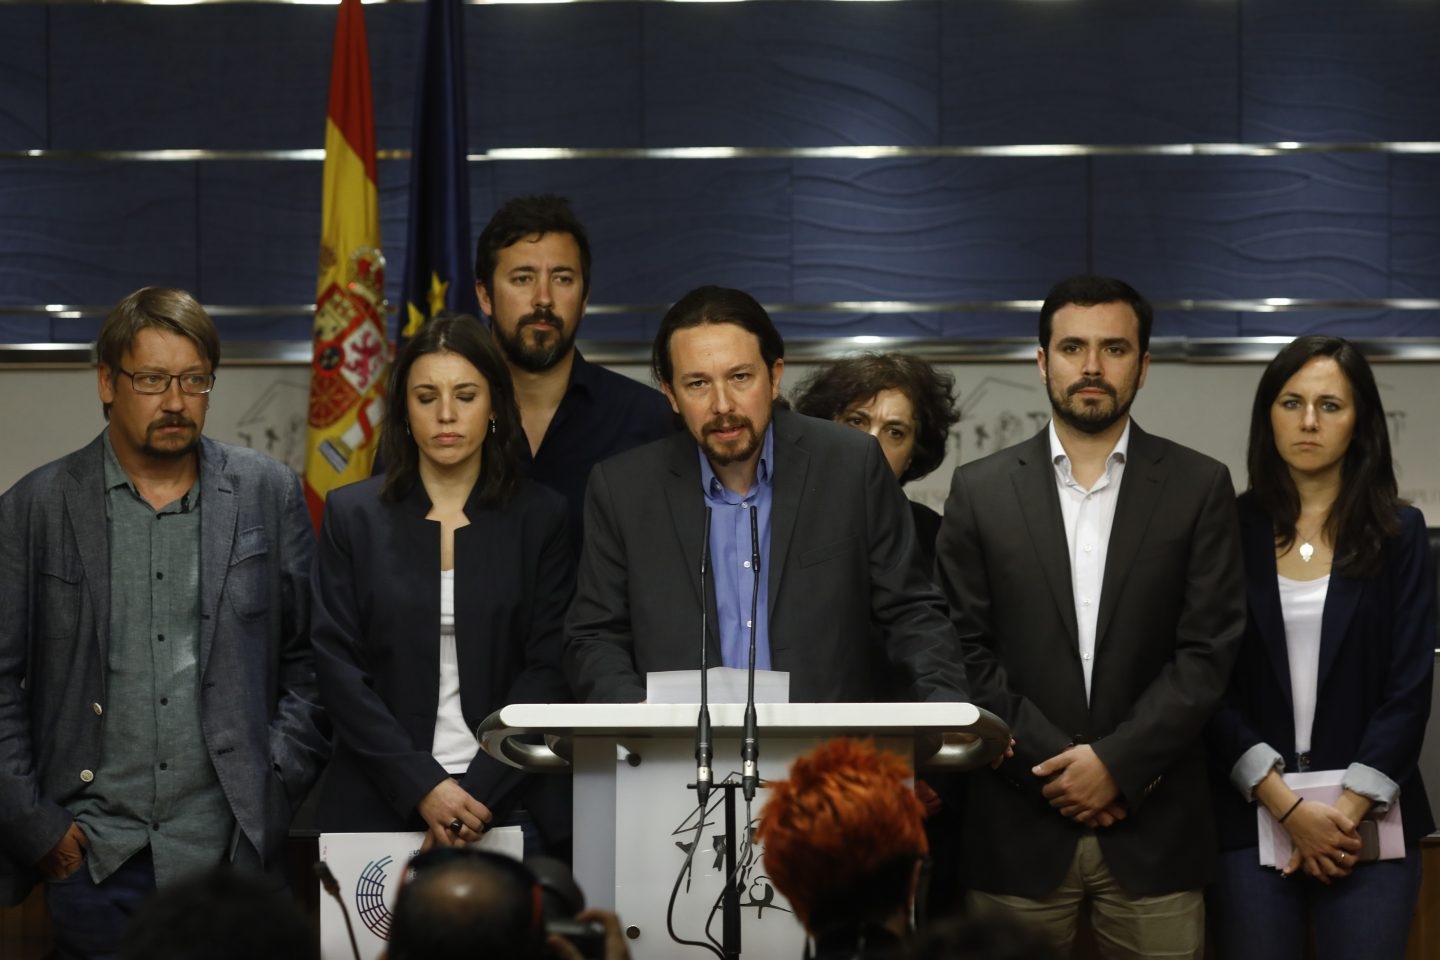 Pablo Iglesias, líder de Podemos, junto a representantes del grupo parlamentario. presentando la moción de censura